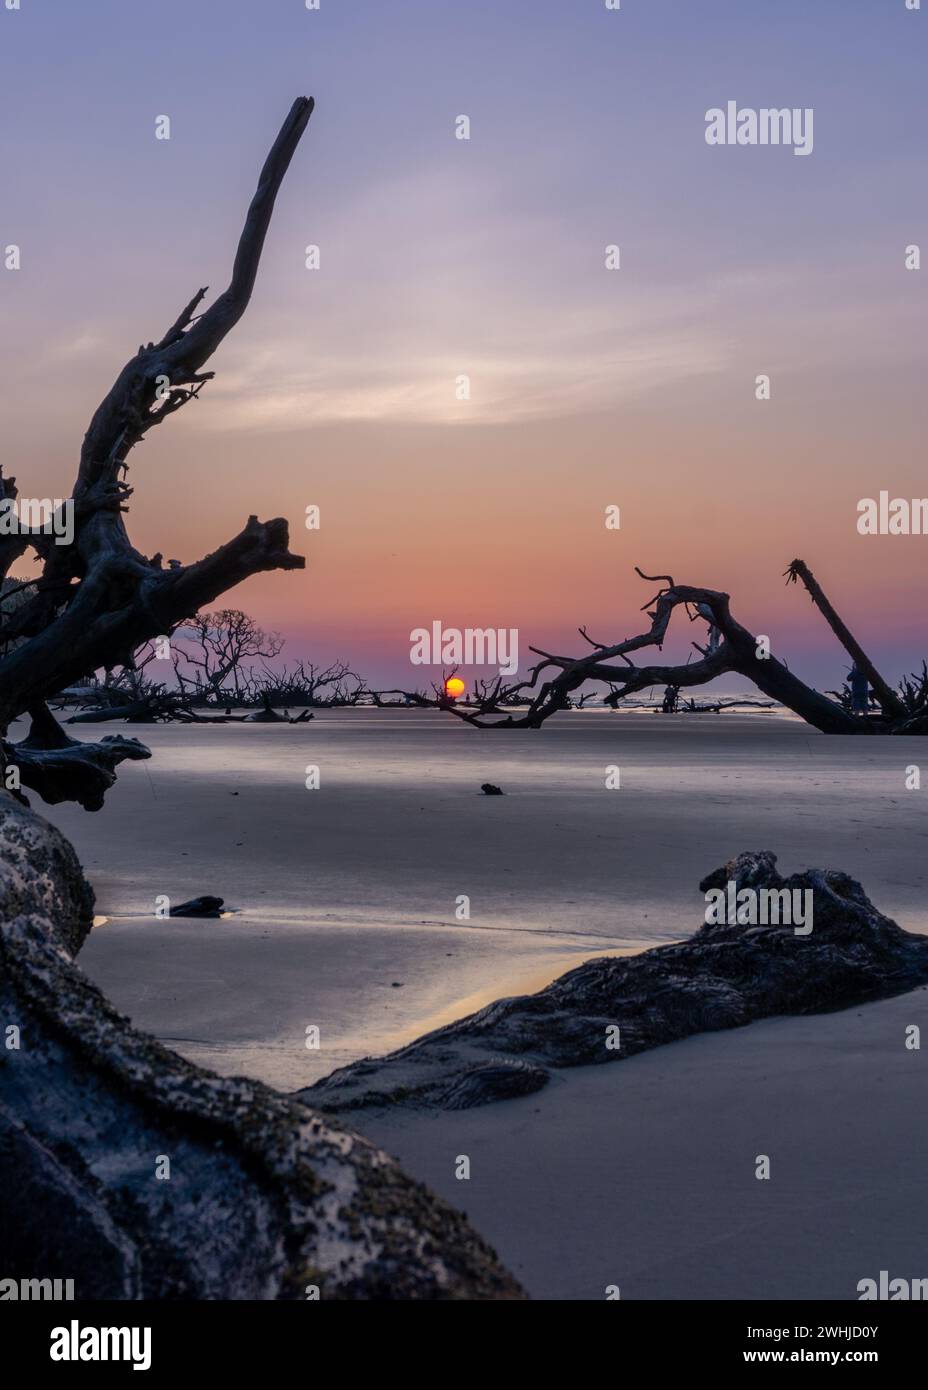 Alba con sole basso all'orizzonte su una spiaggia con alberi morti e alberi da mare Foto Stock